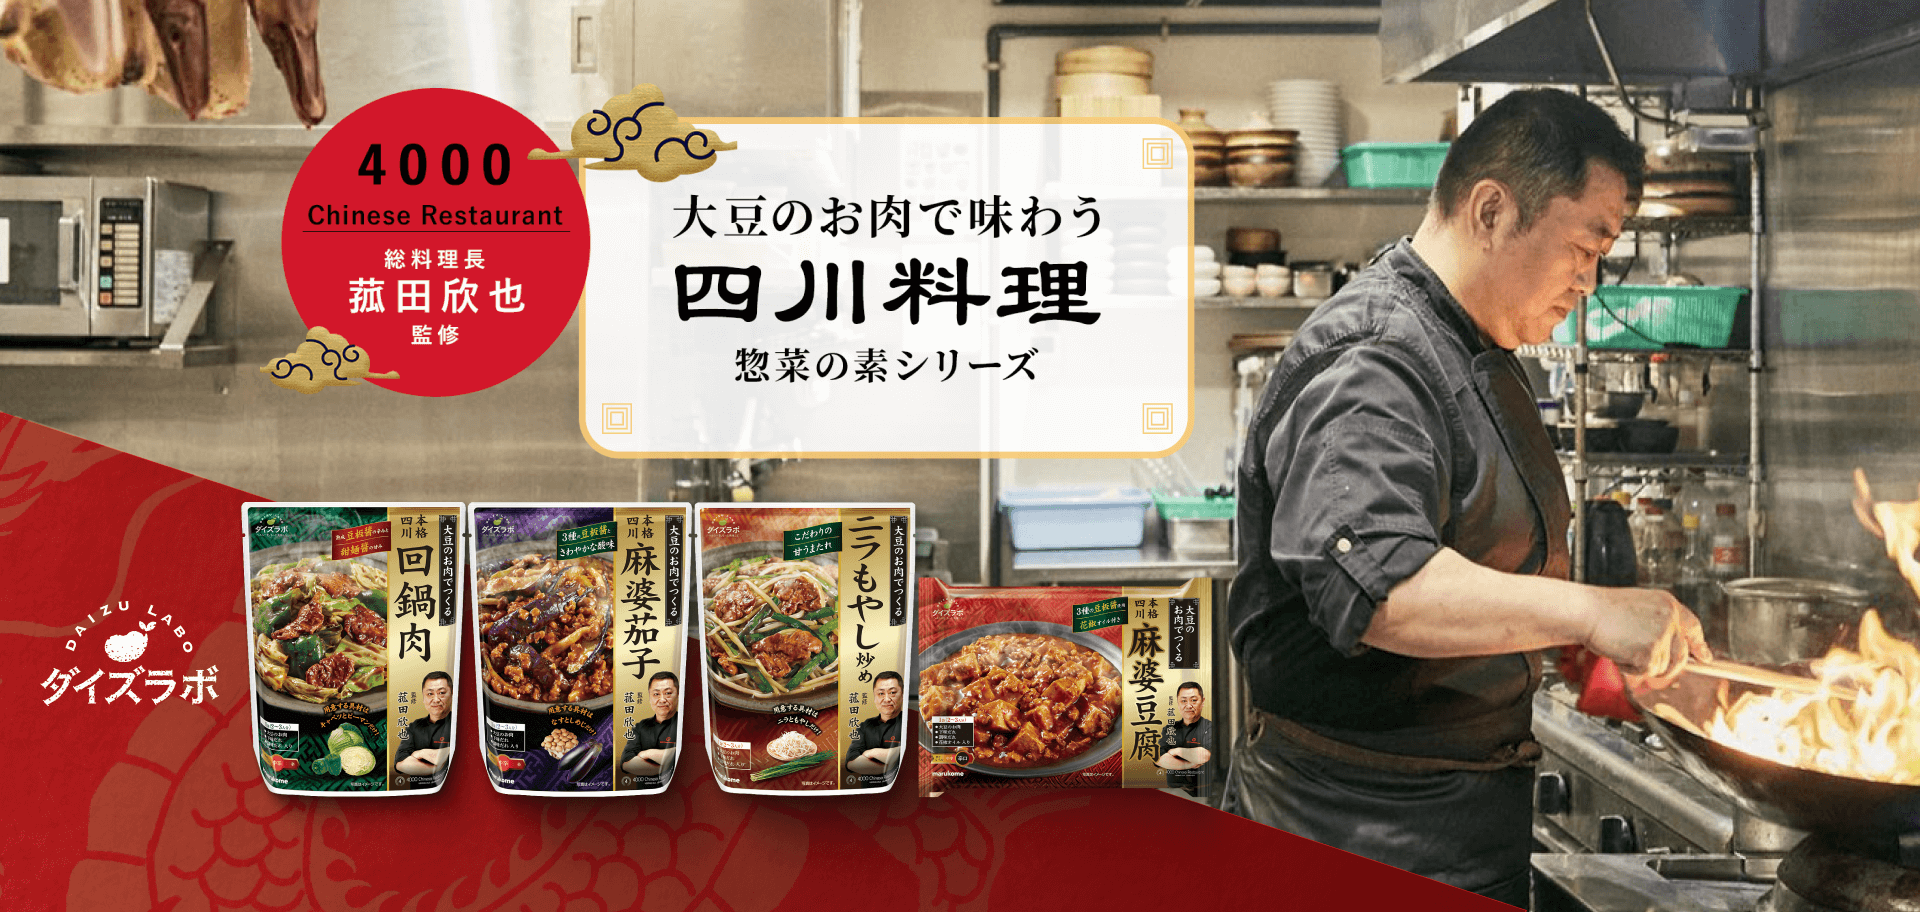 “大豆のお肉で味わう四川料理 惣菜の素シリーズ